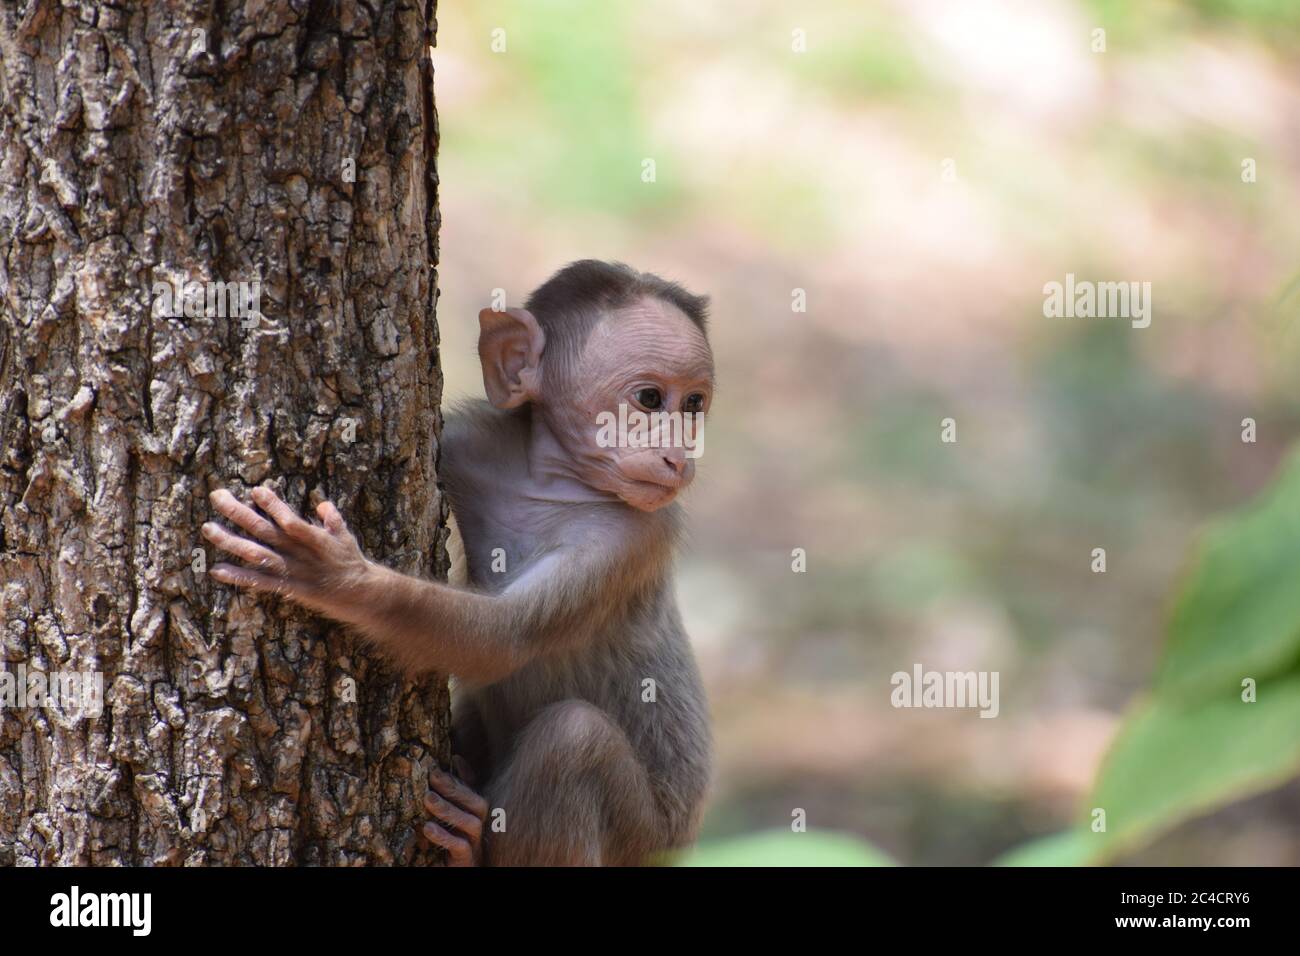 Mono a una rama Fotografía de Alamy